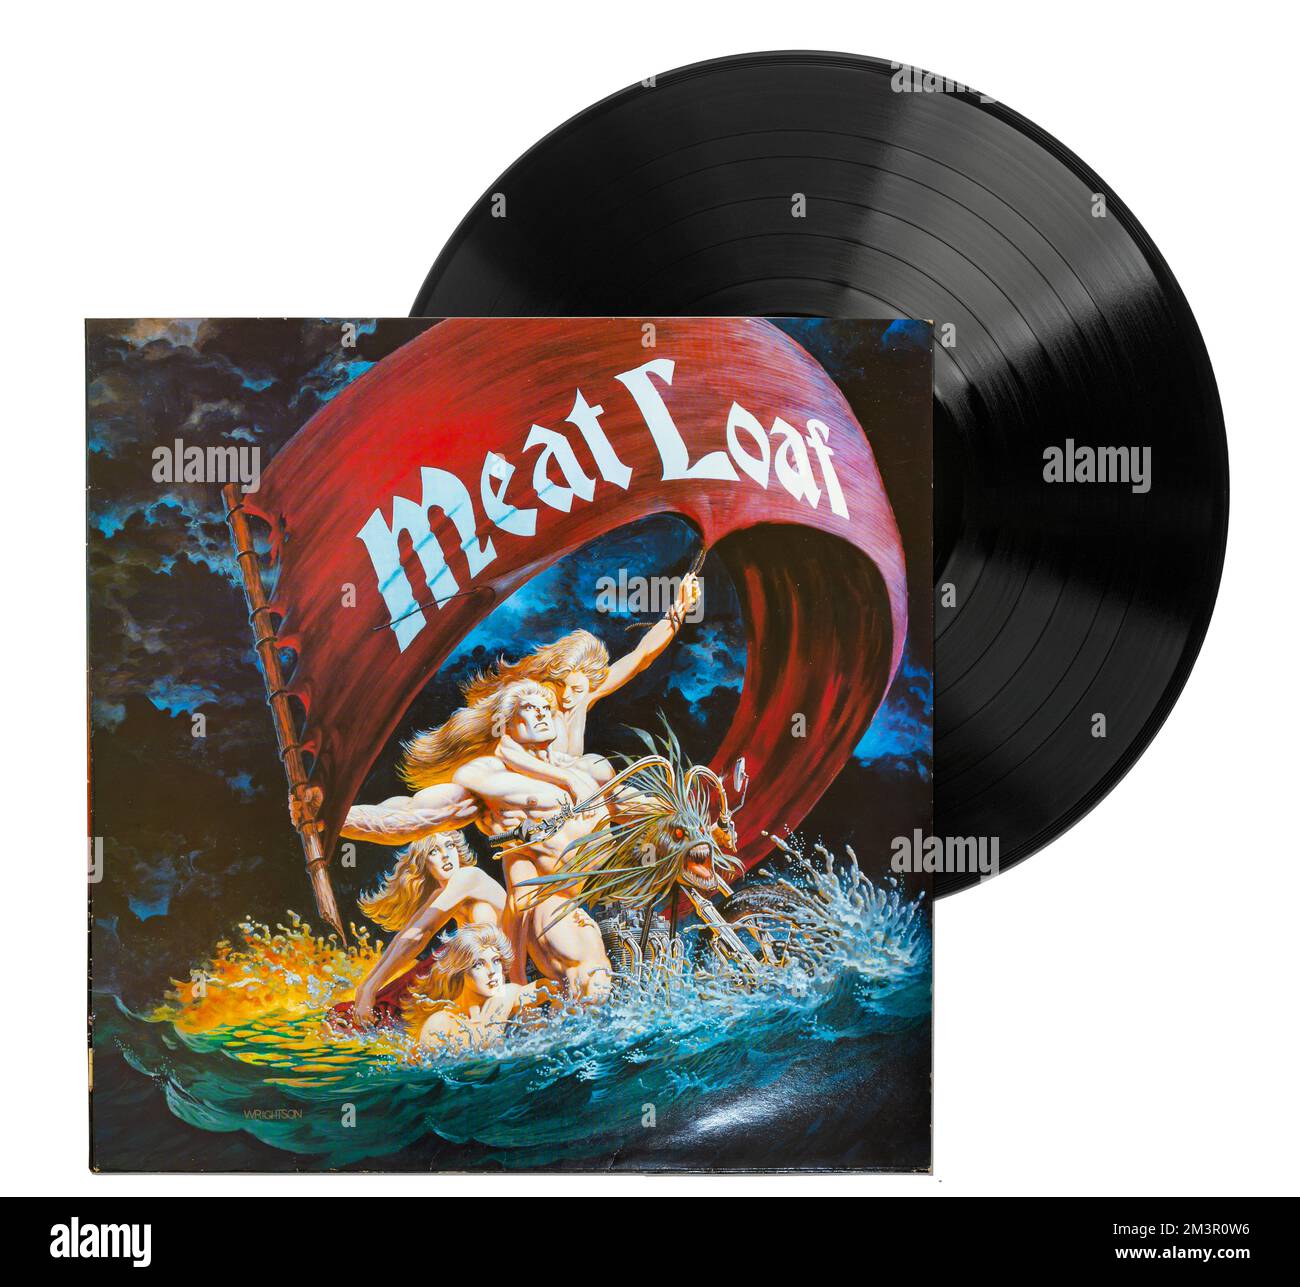 Dead Ringer è un album della band hard rock Meat Loaf. Michael Lee Aday, meglio conosciuto come Meat Loaf, è un cantante e attore americano. Foto Stock